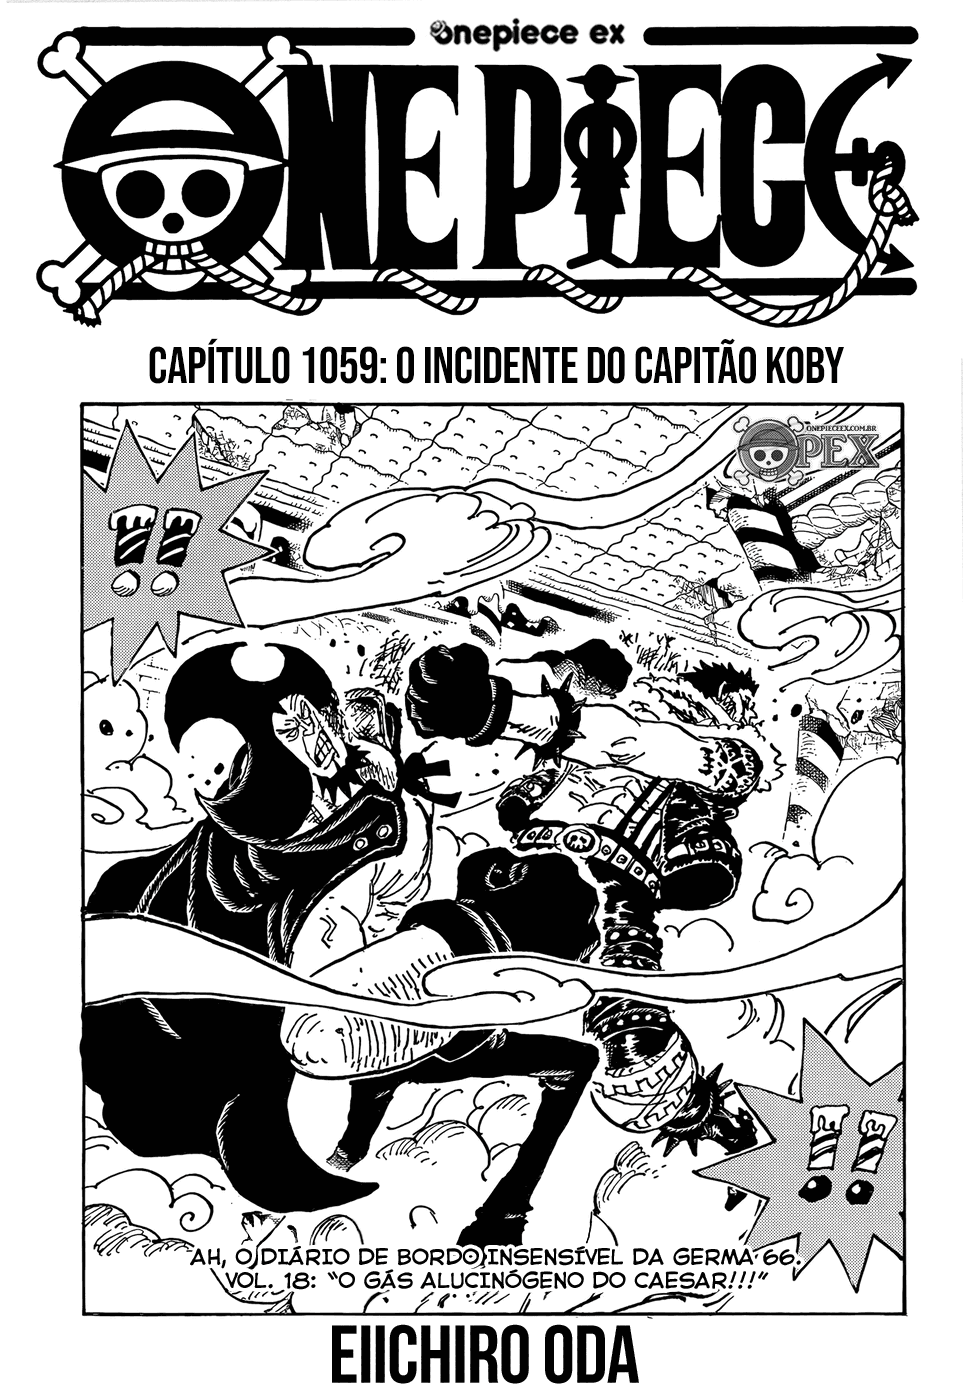 One Piece Ex  OPEX on X: MANGÁ DO SÉCULO! ━ O capítulo 1044 de One Piece  já está disponível na OPEX. Um bom mangá a todos ⬇️ #OnePiece1044    /